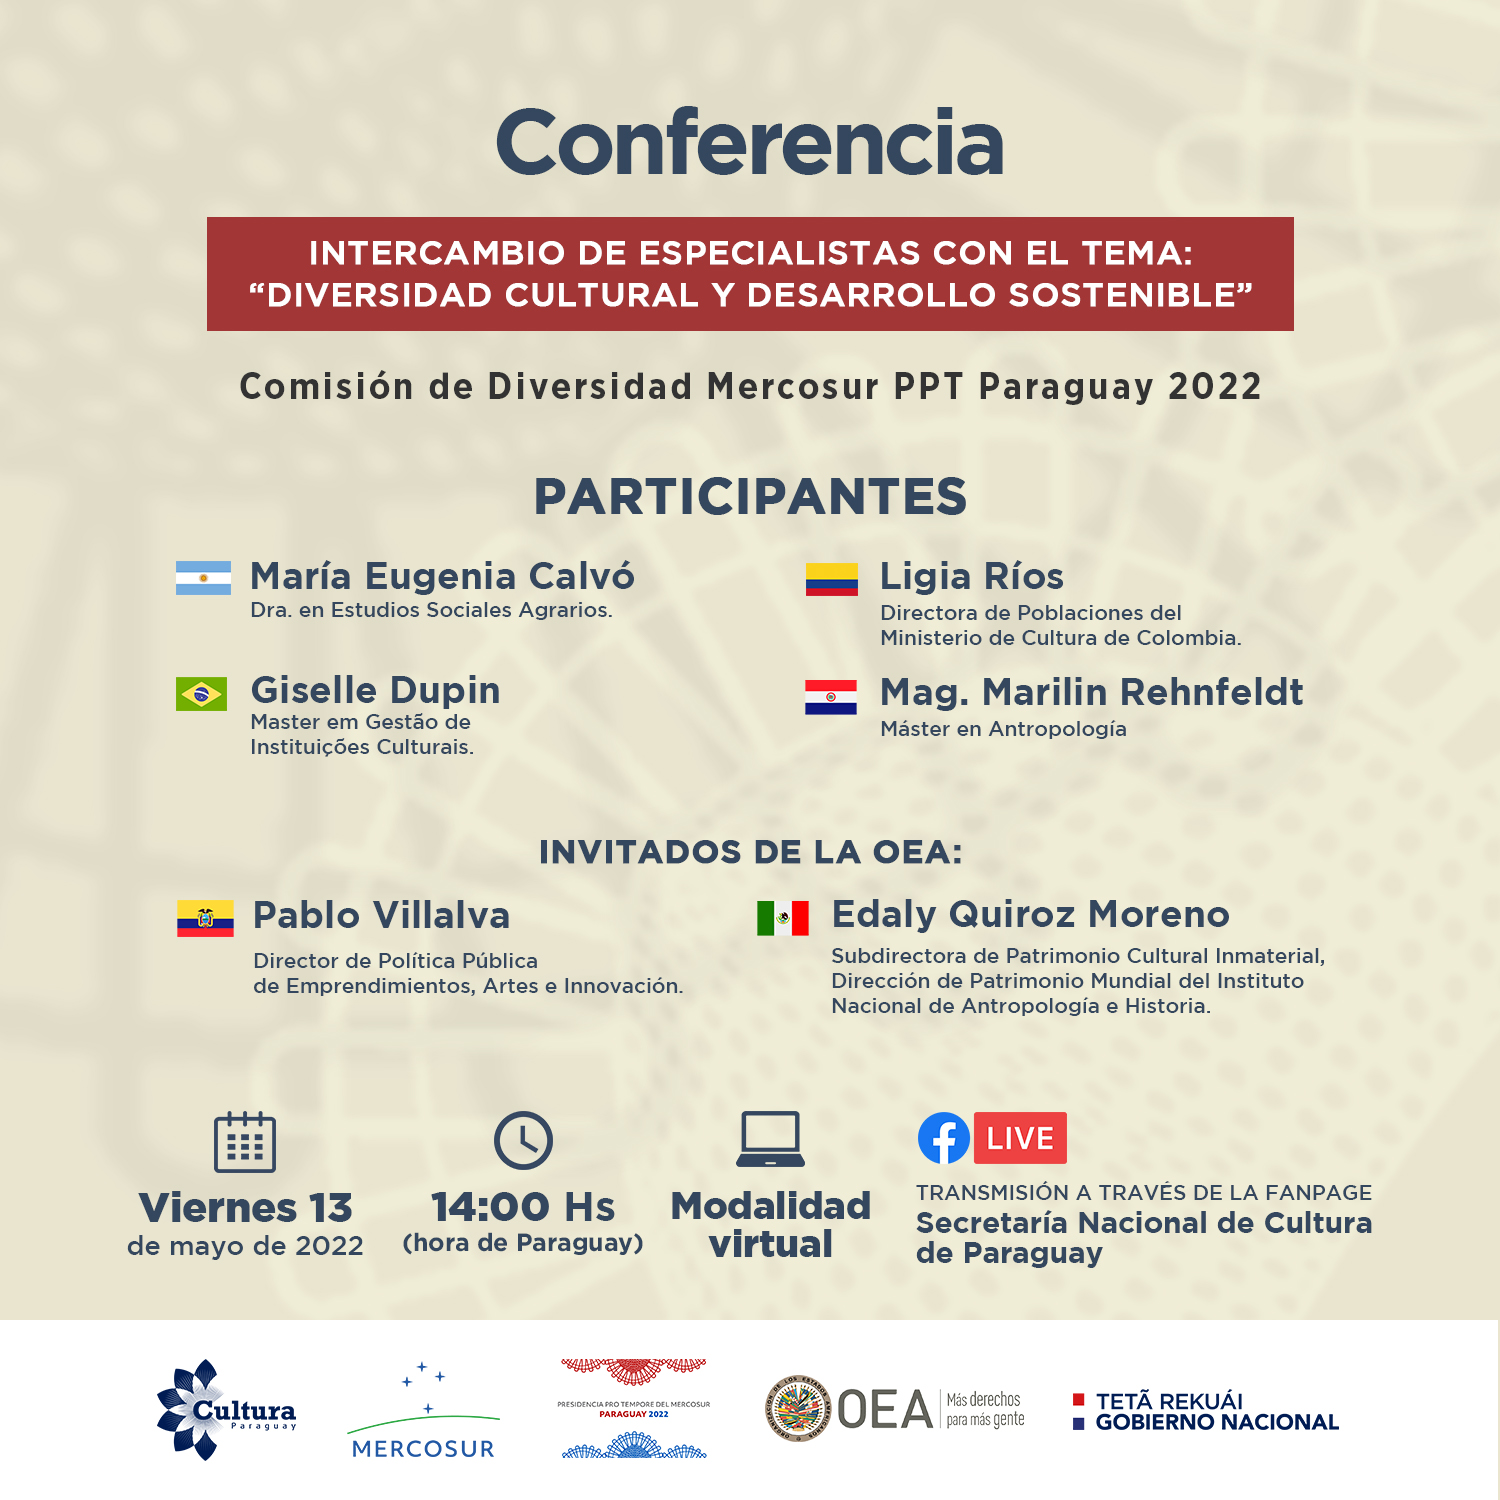 Flyer-Conferencia-Intercambio-de-Especialistas_1.jpg